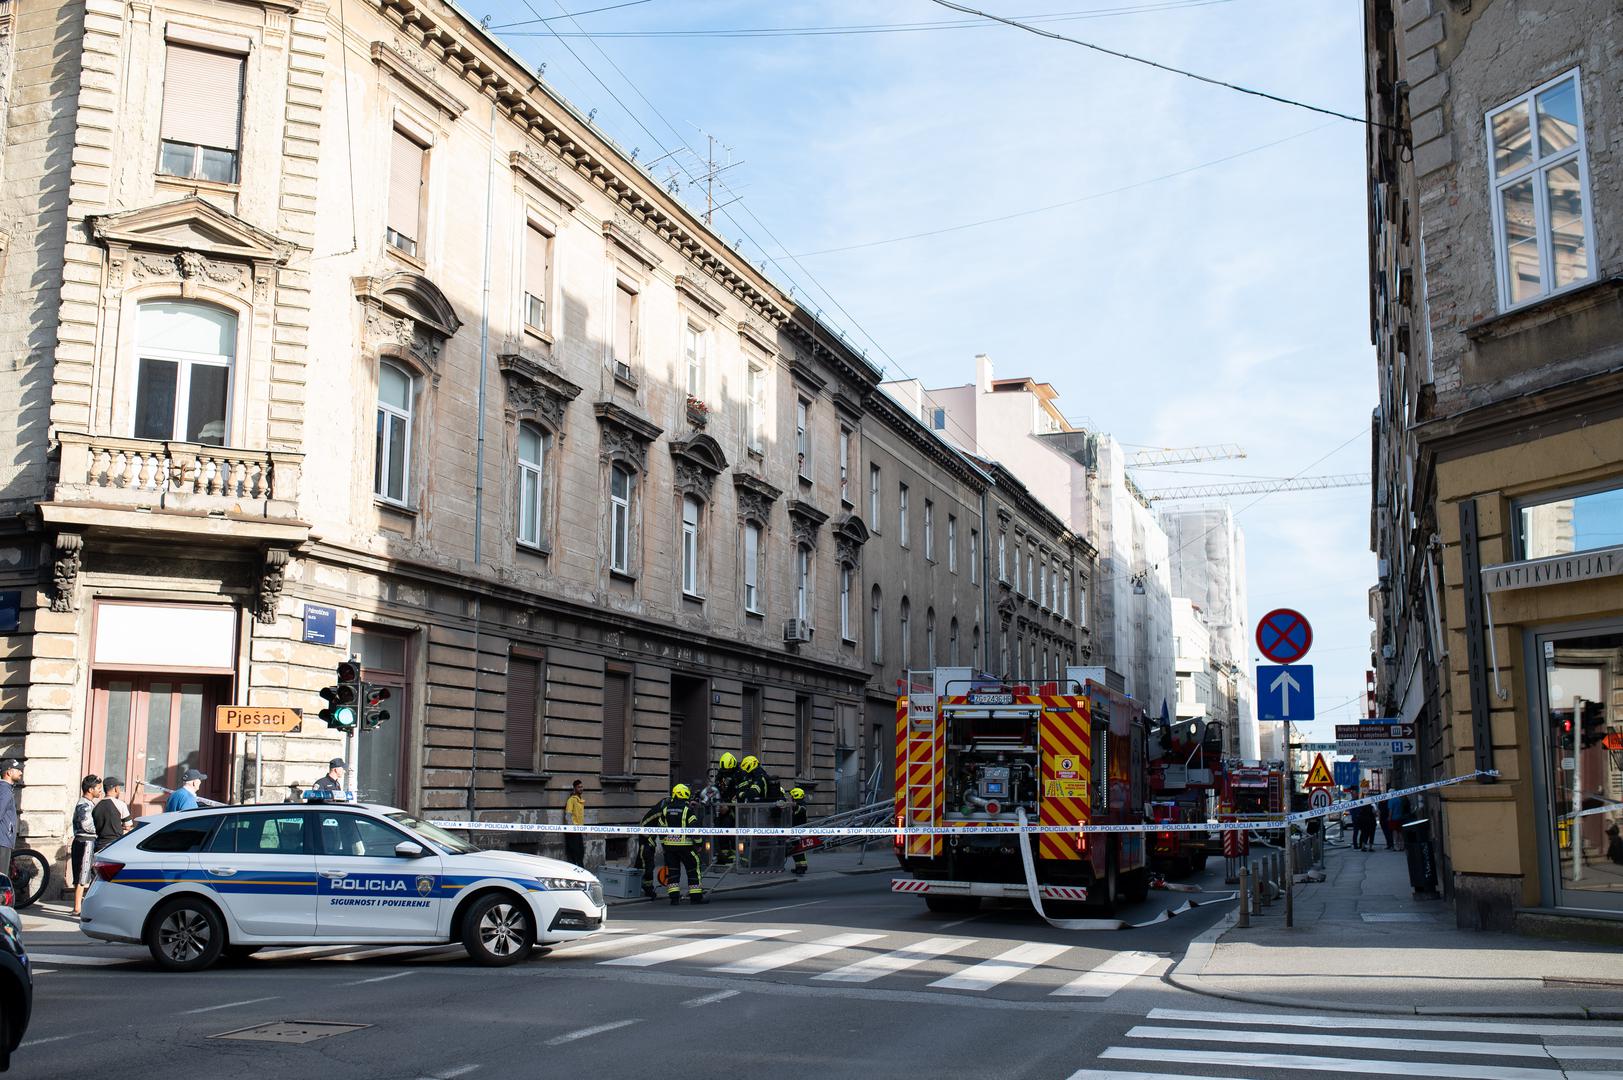 Kako saznaje 24sata požar je izbio u kuhinji jednog stana, a na intervenciju su izašli vatrogasci JVP Zagreb sa šest vozila.

